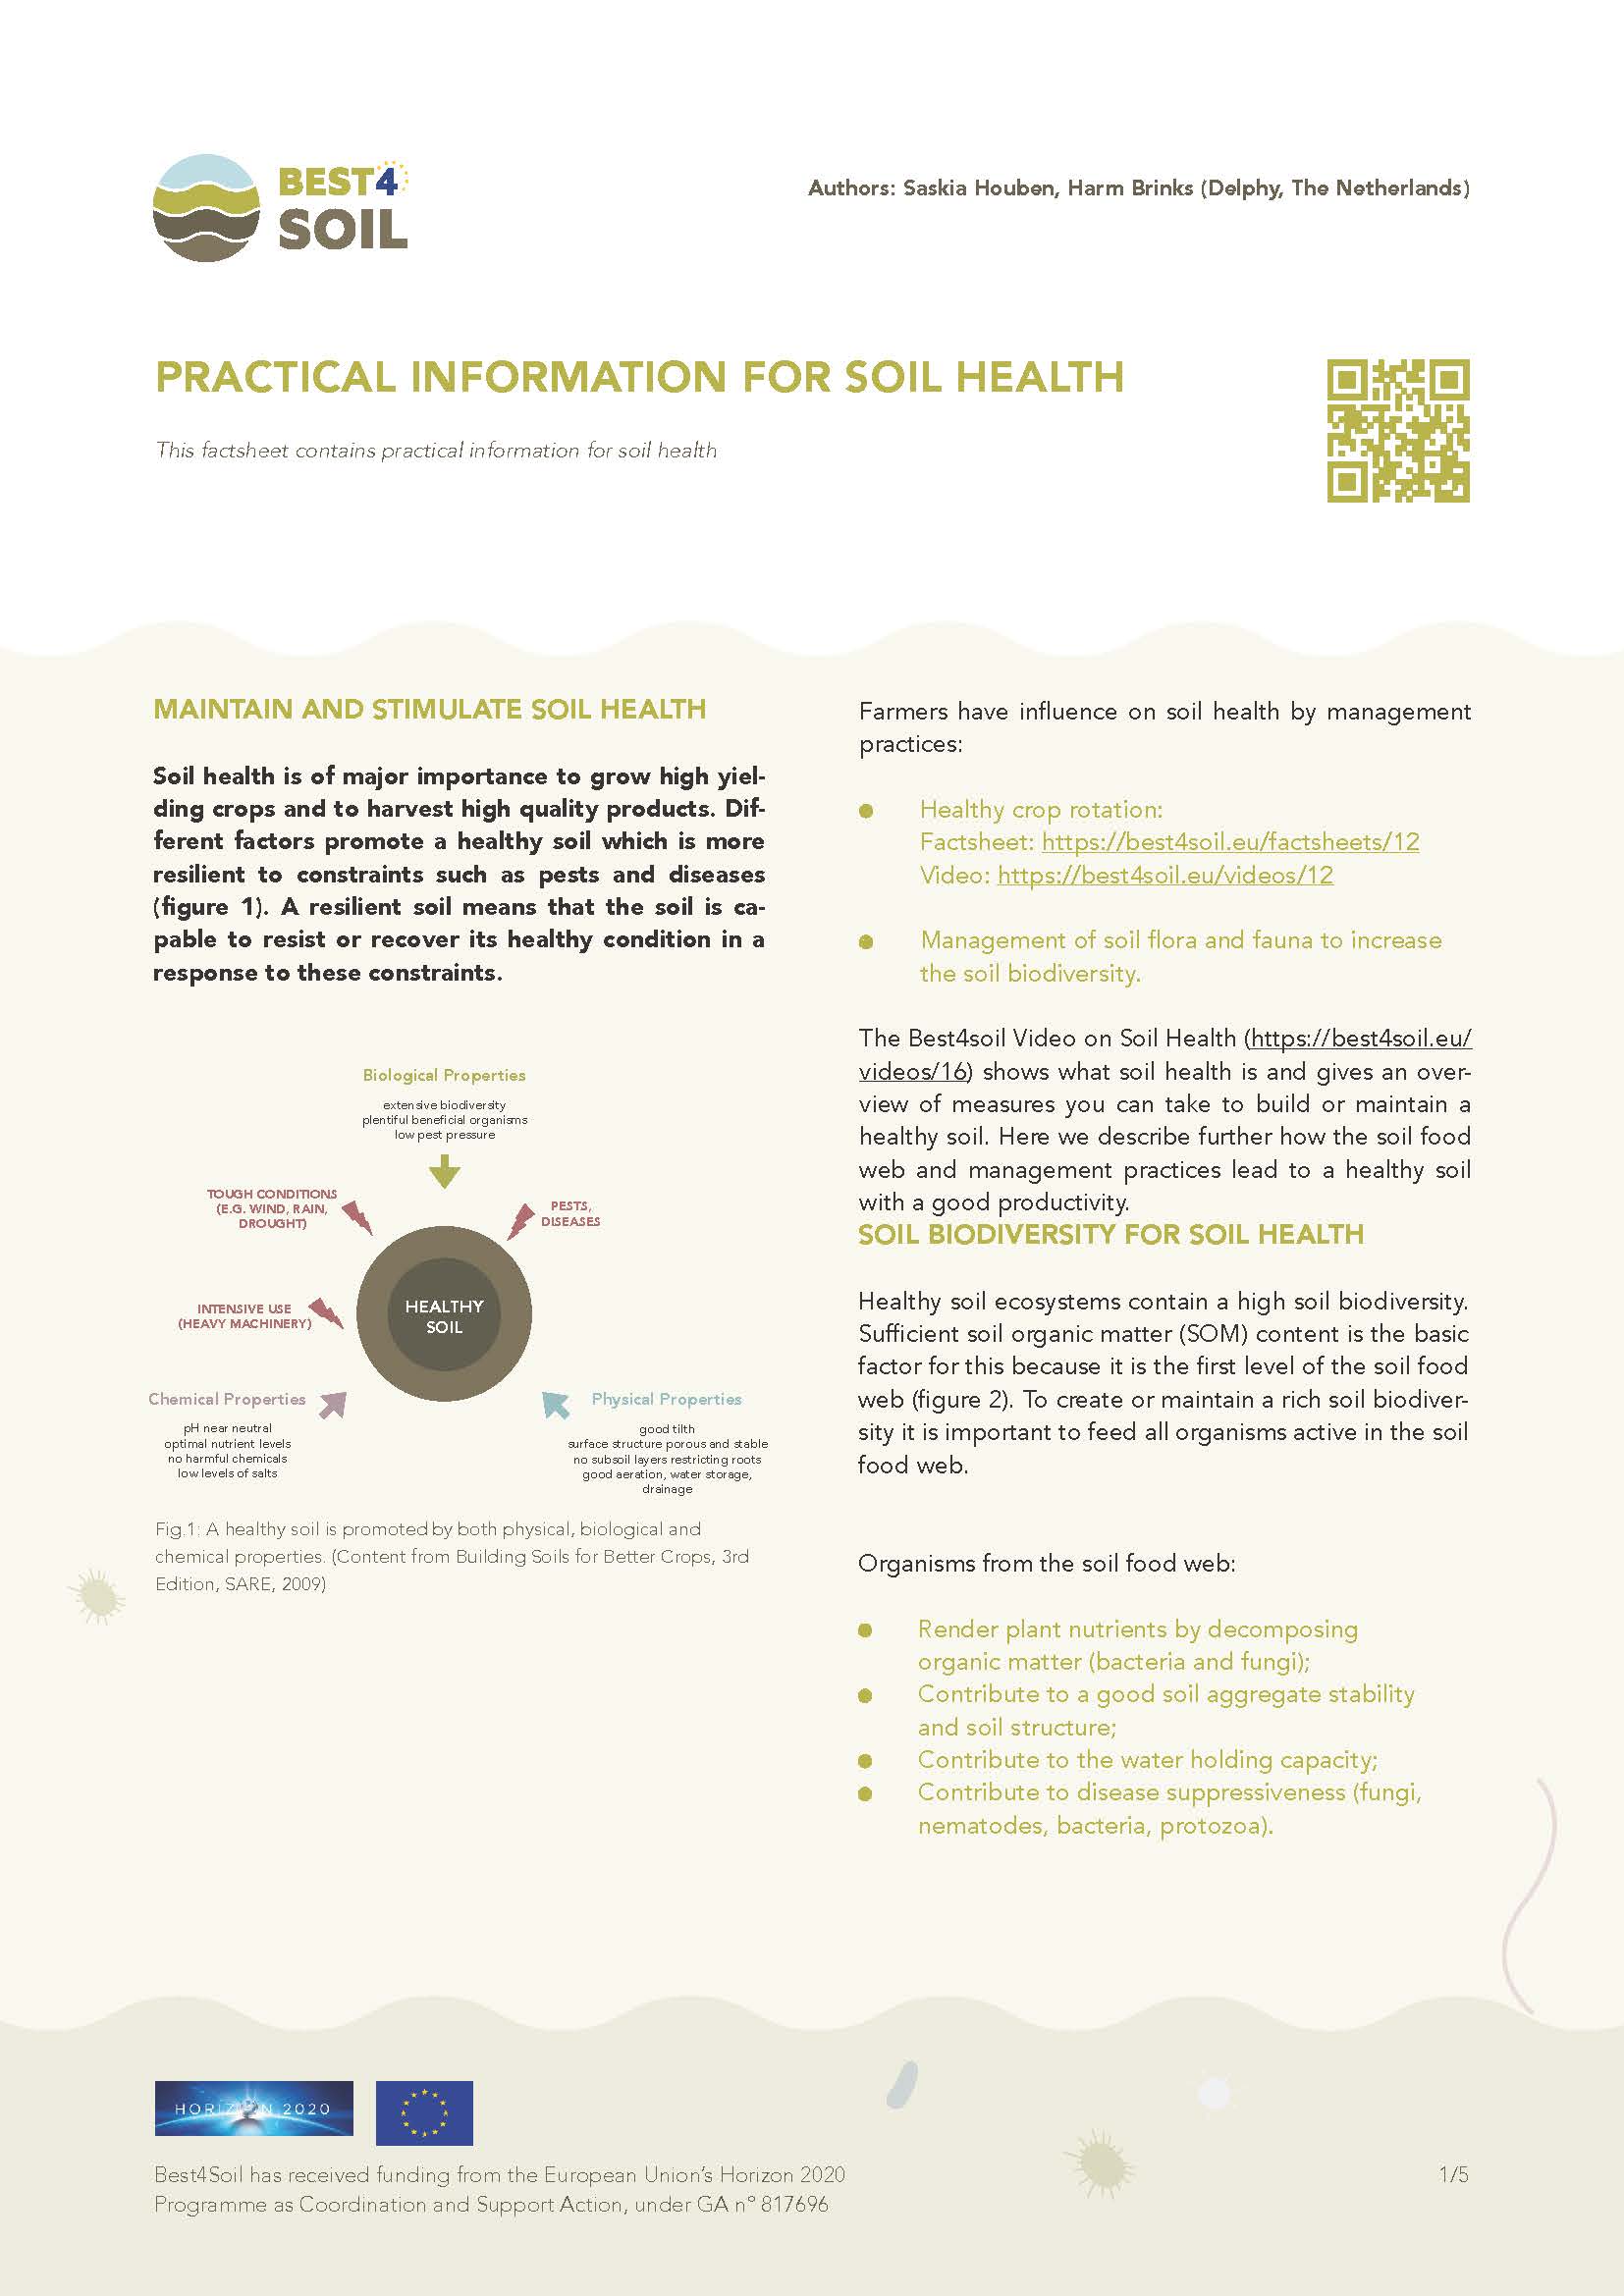 Praktische Informationen zur Bodengesundheit (Best4Soil Factsheet)